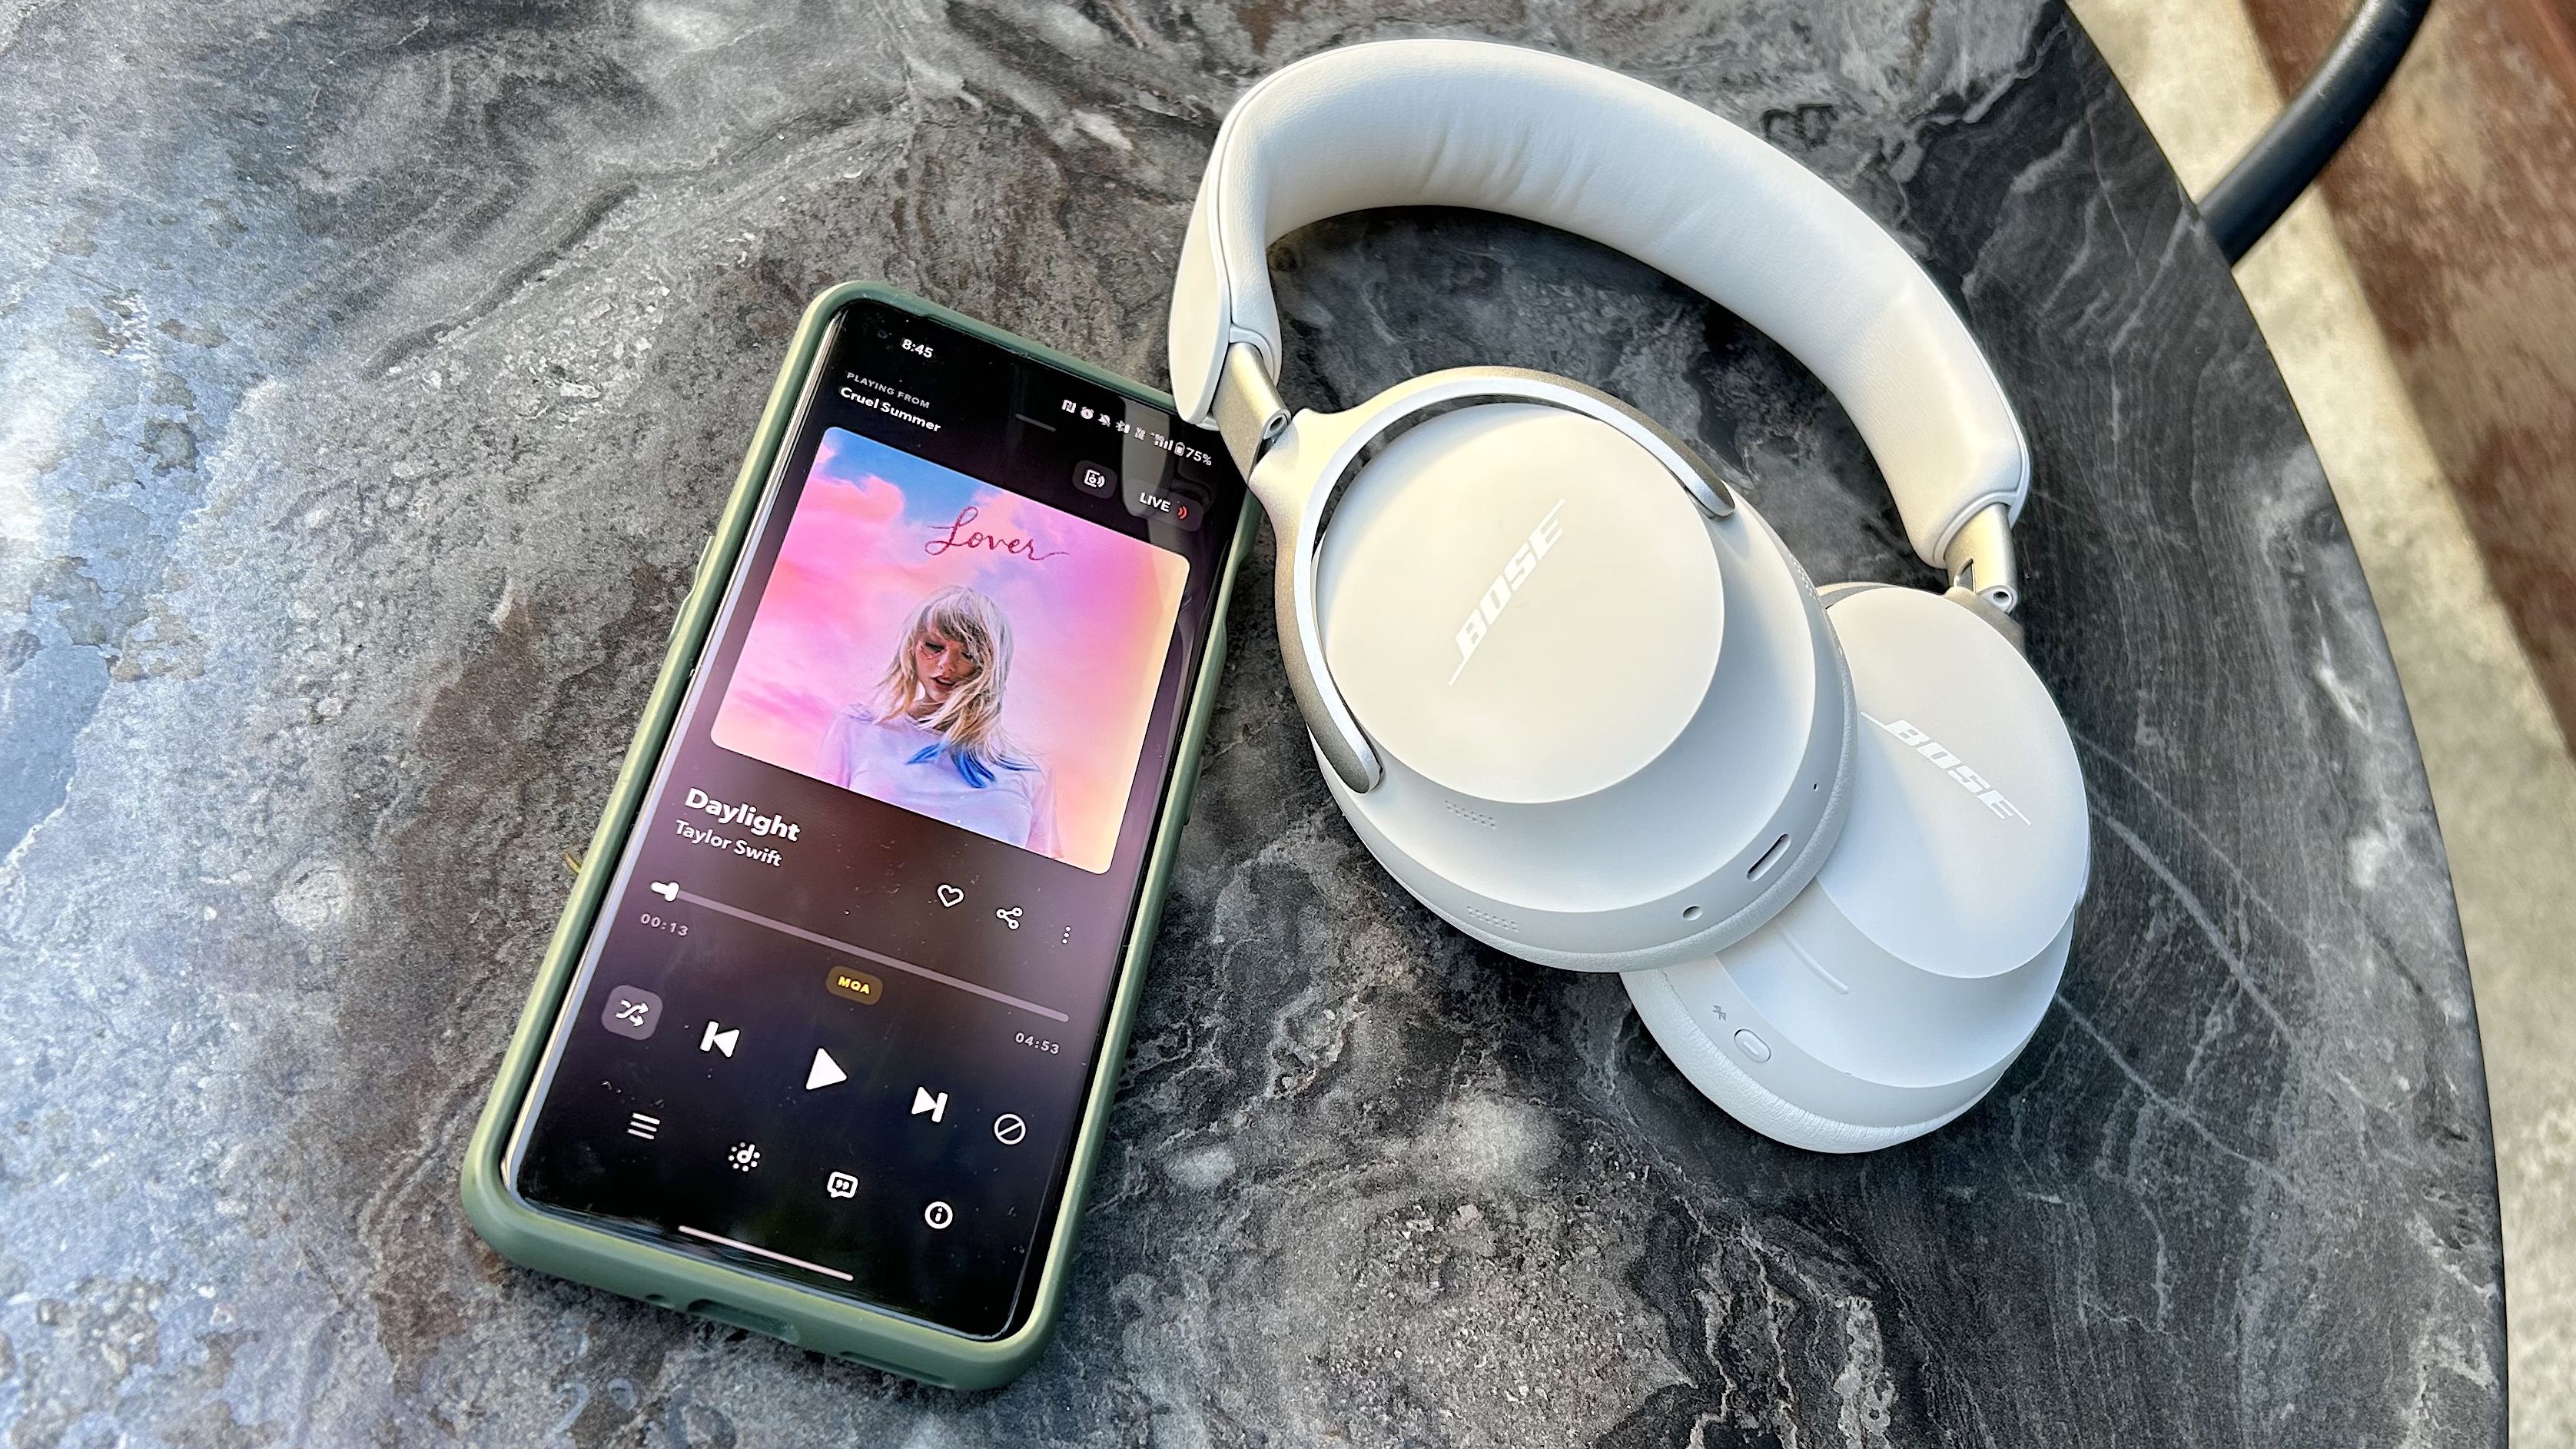 Bose QuietComfort Ultra Wireless Headphones with QuietComfort